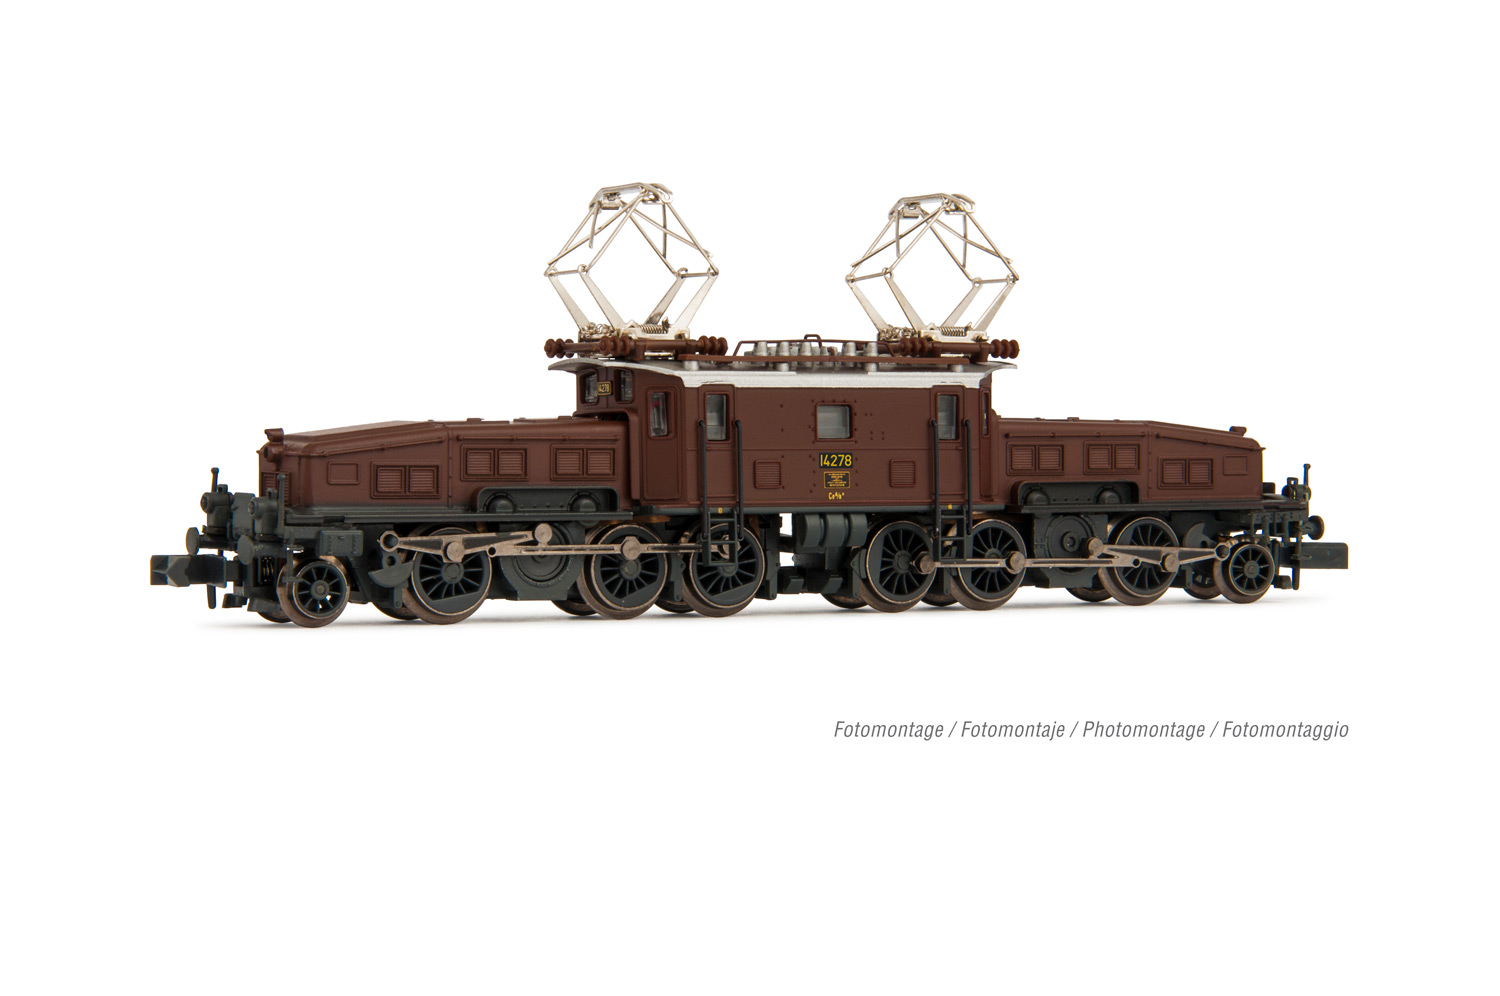 N Scale - Arnold - HN2431 - Locomotive, Electric, Crocodile - SBB CFF FFS - 14278